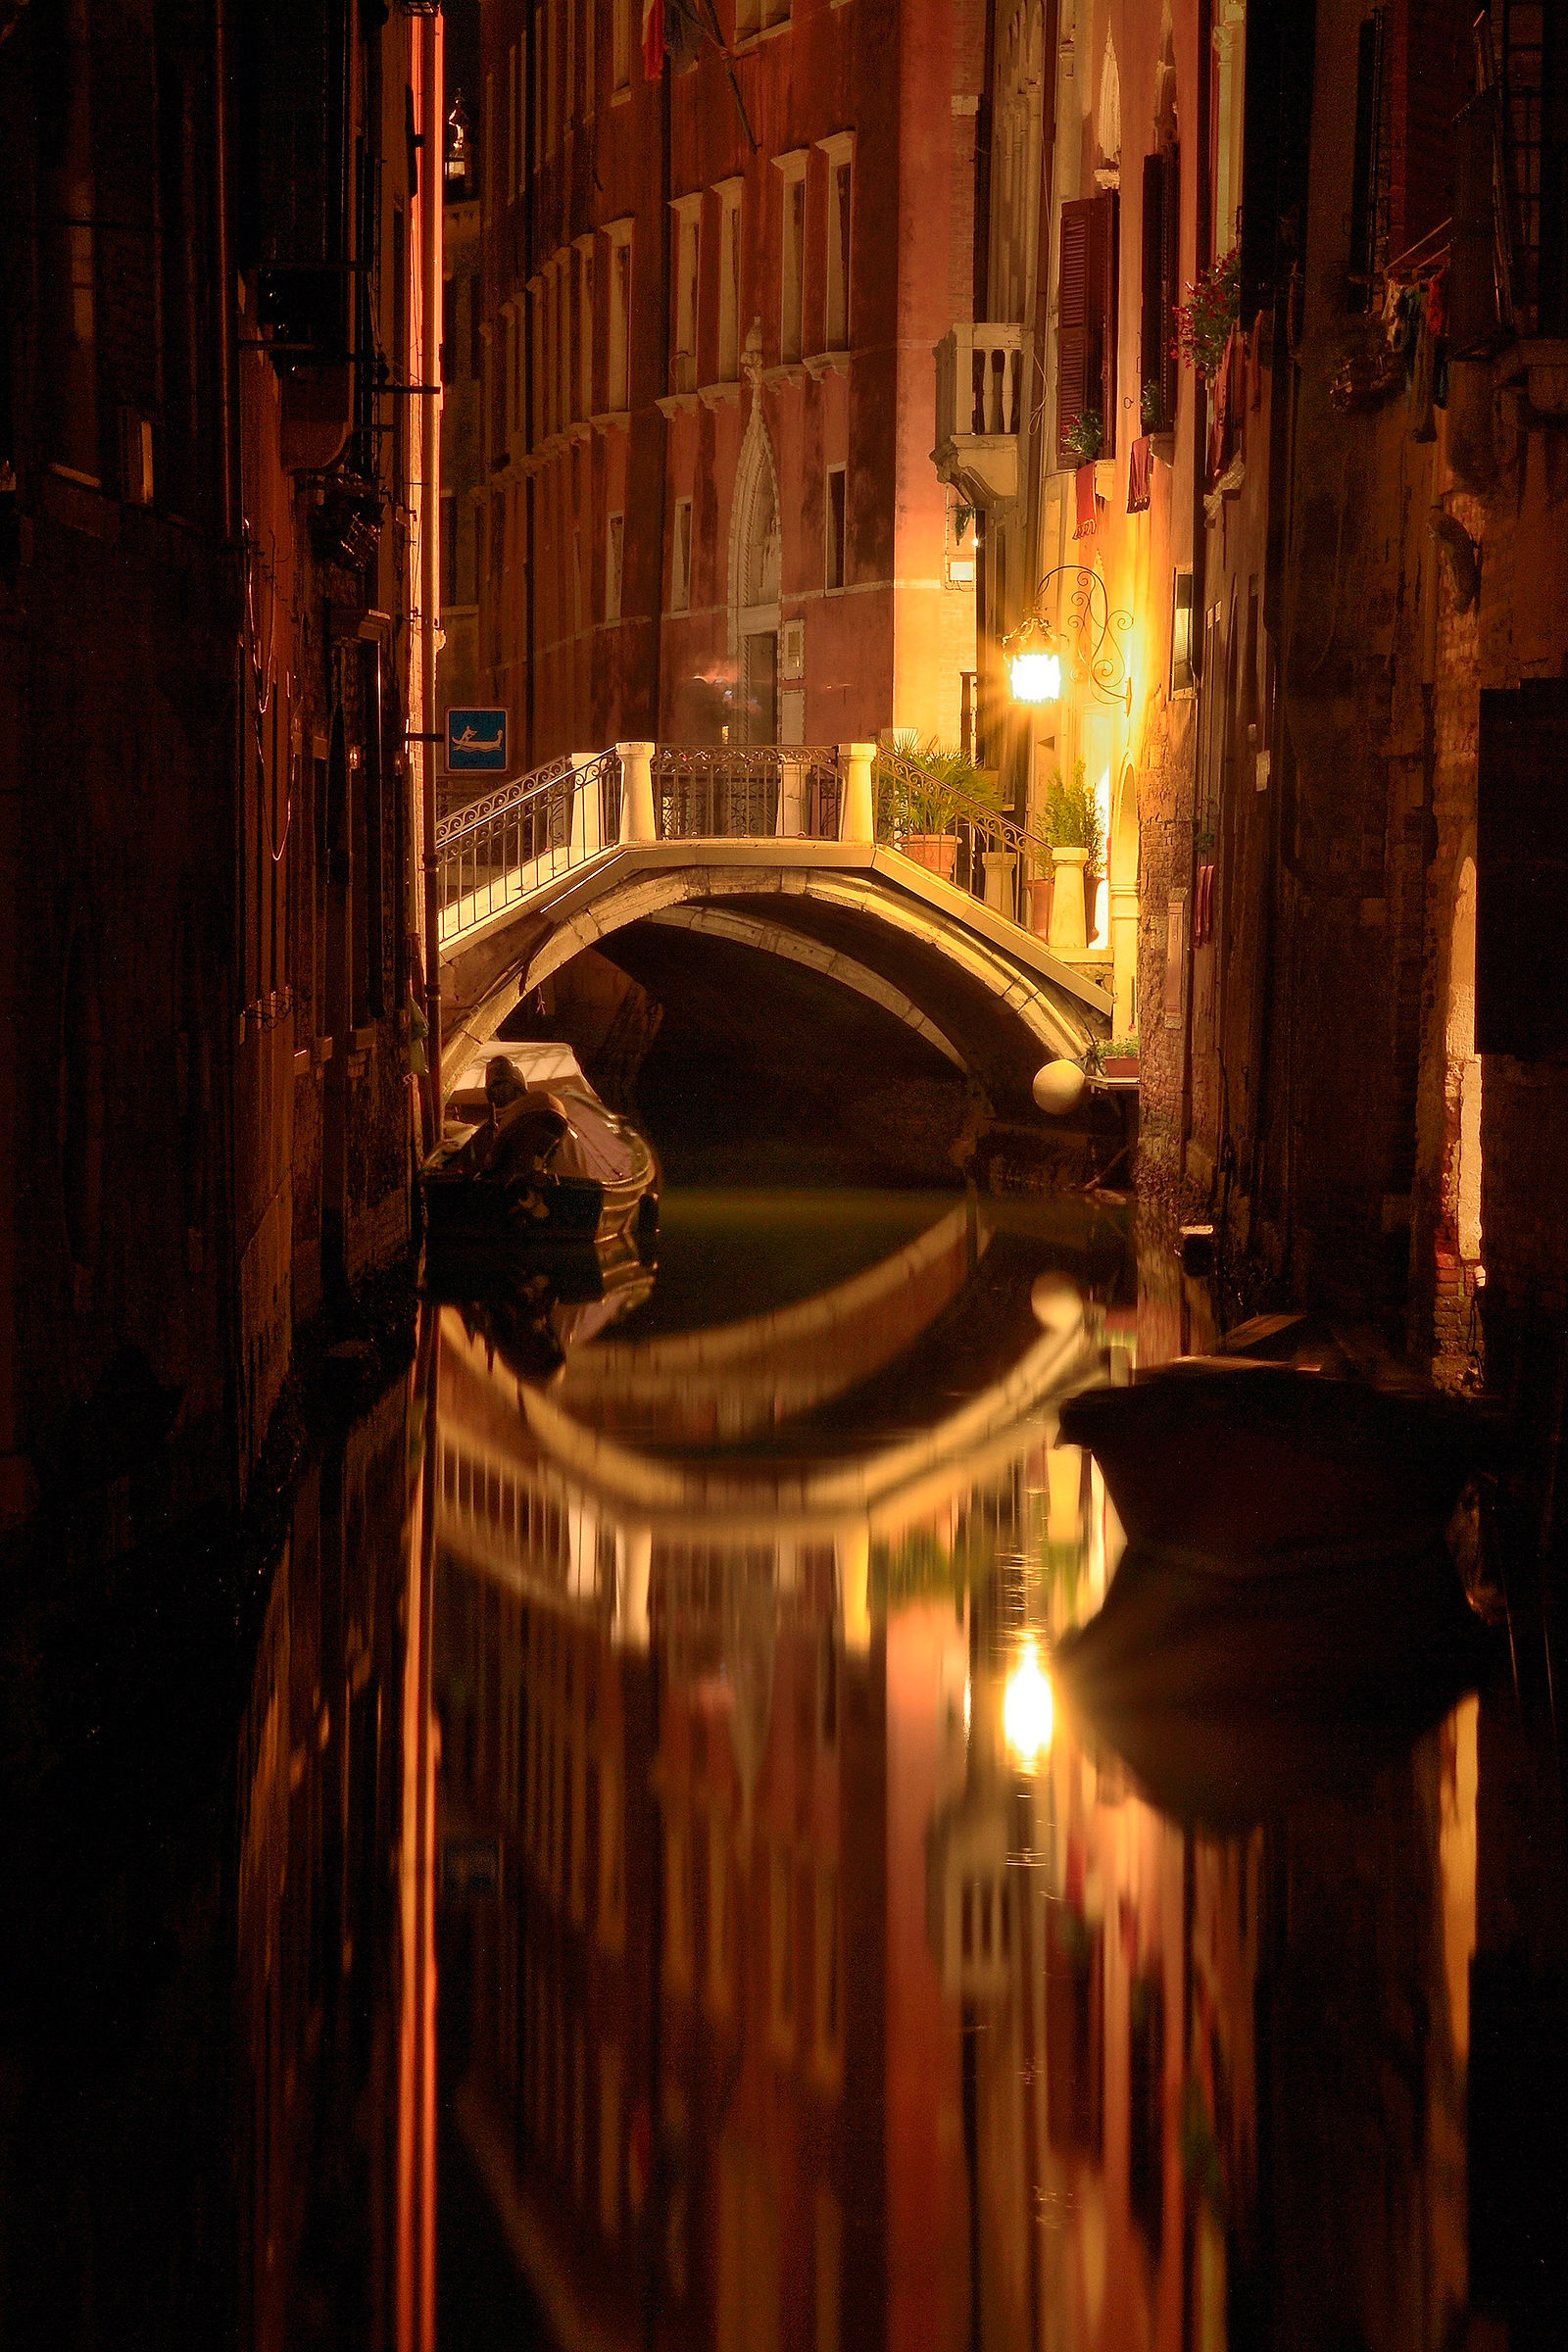 Venezia e la magia dei suoi canali...